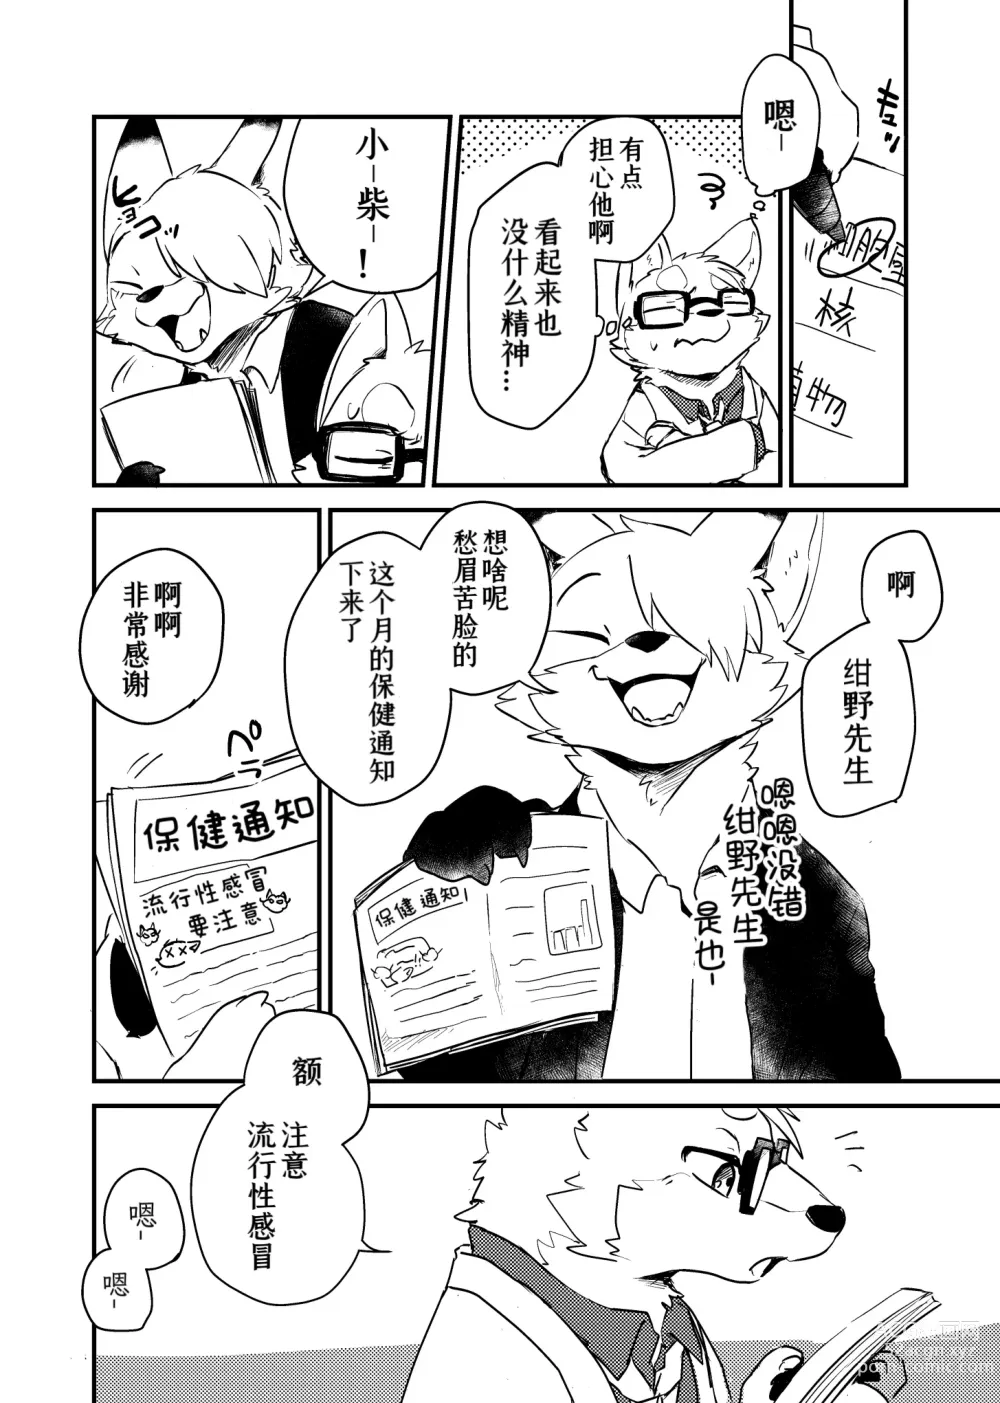 Page 6 of doujinshi 老师和我。流行性感冒务必要注意哦！？